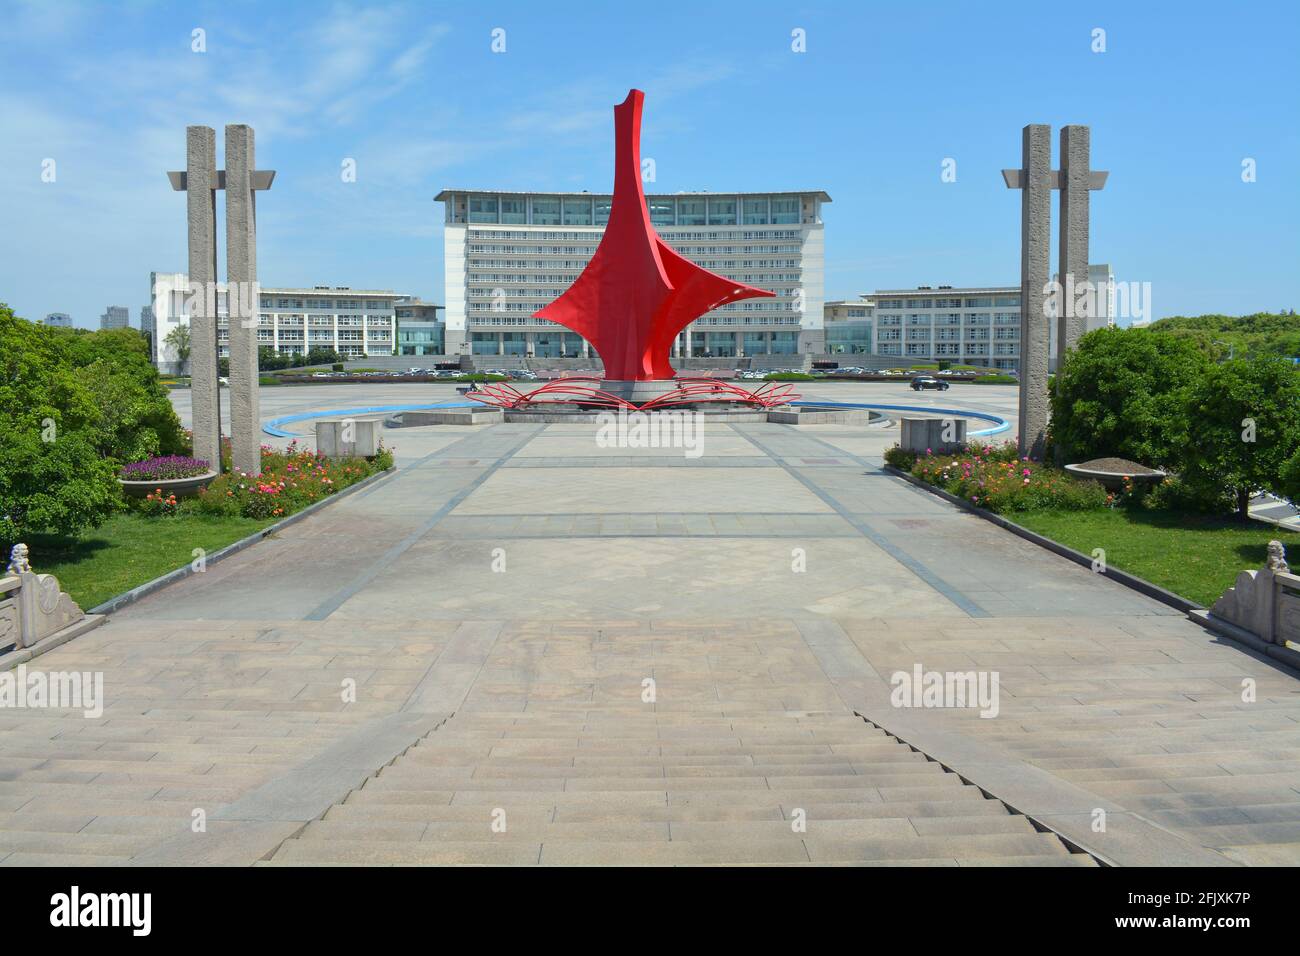 Grande sculpture d'art moderne rouge en face des bureaux du gouvernement populaire de Jiaxing. Banque D'Images